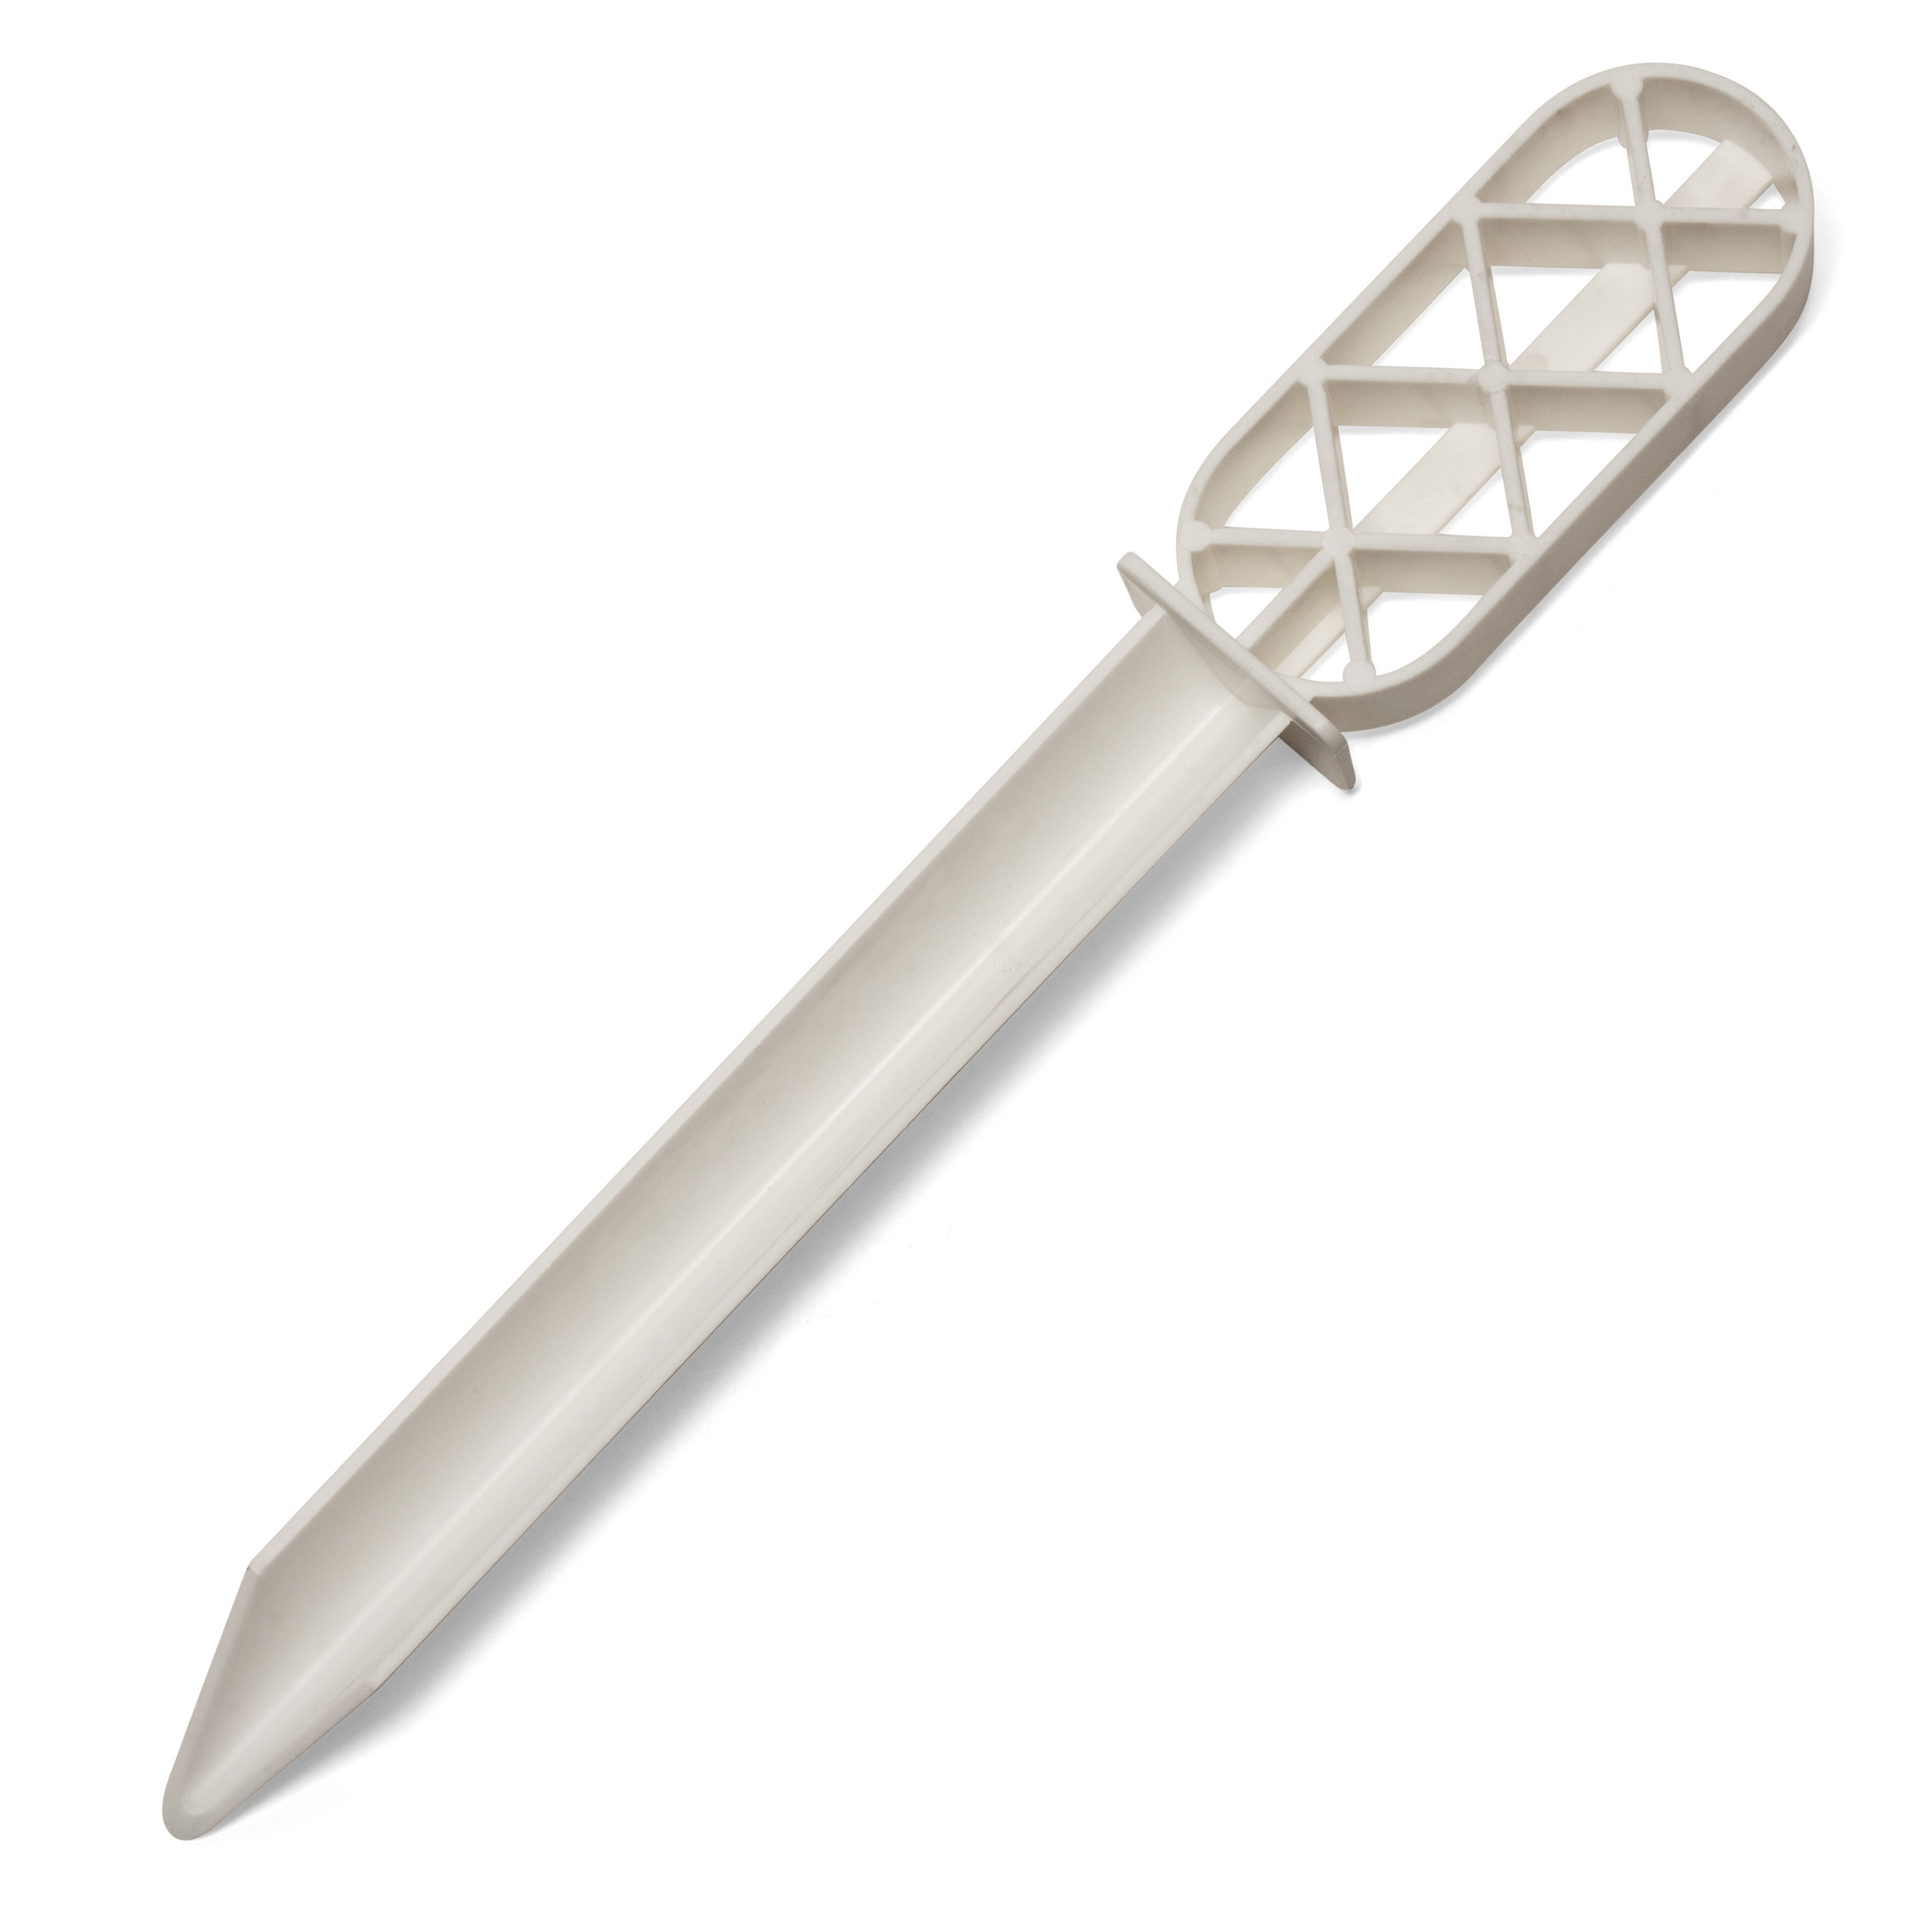 Bel-Art Sampler Spoon, 1/2 Teaspoon, pack/12